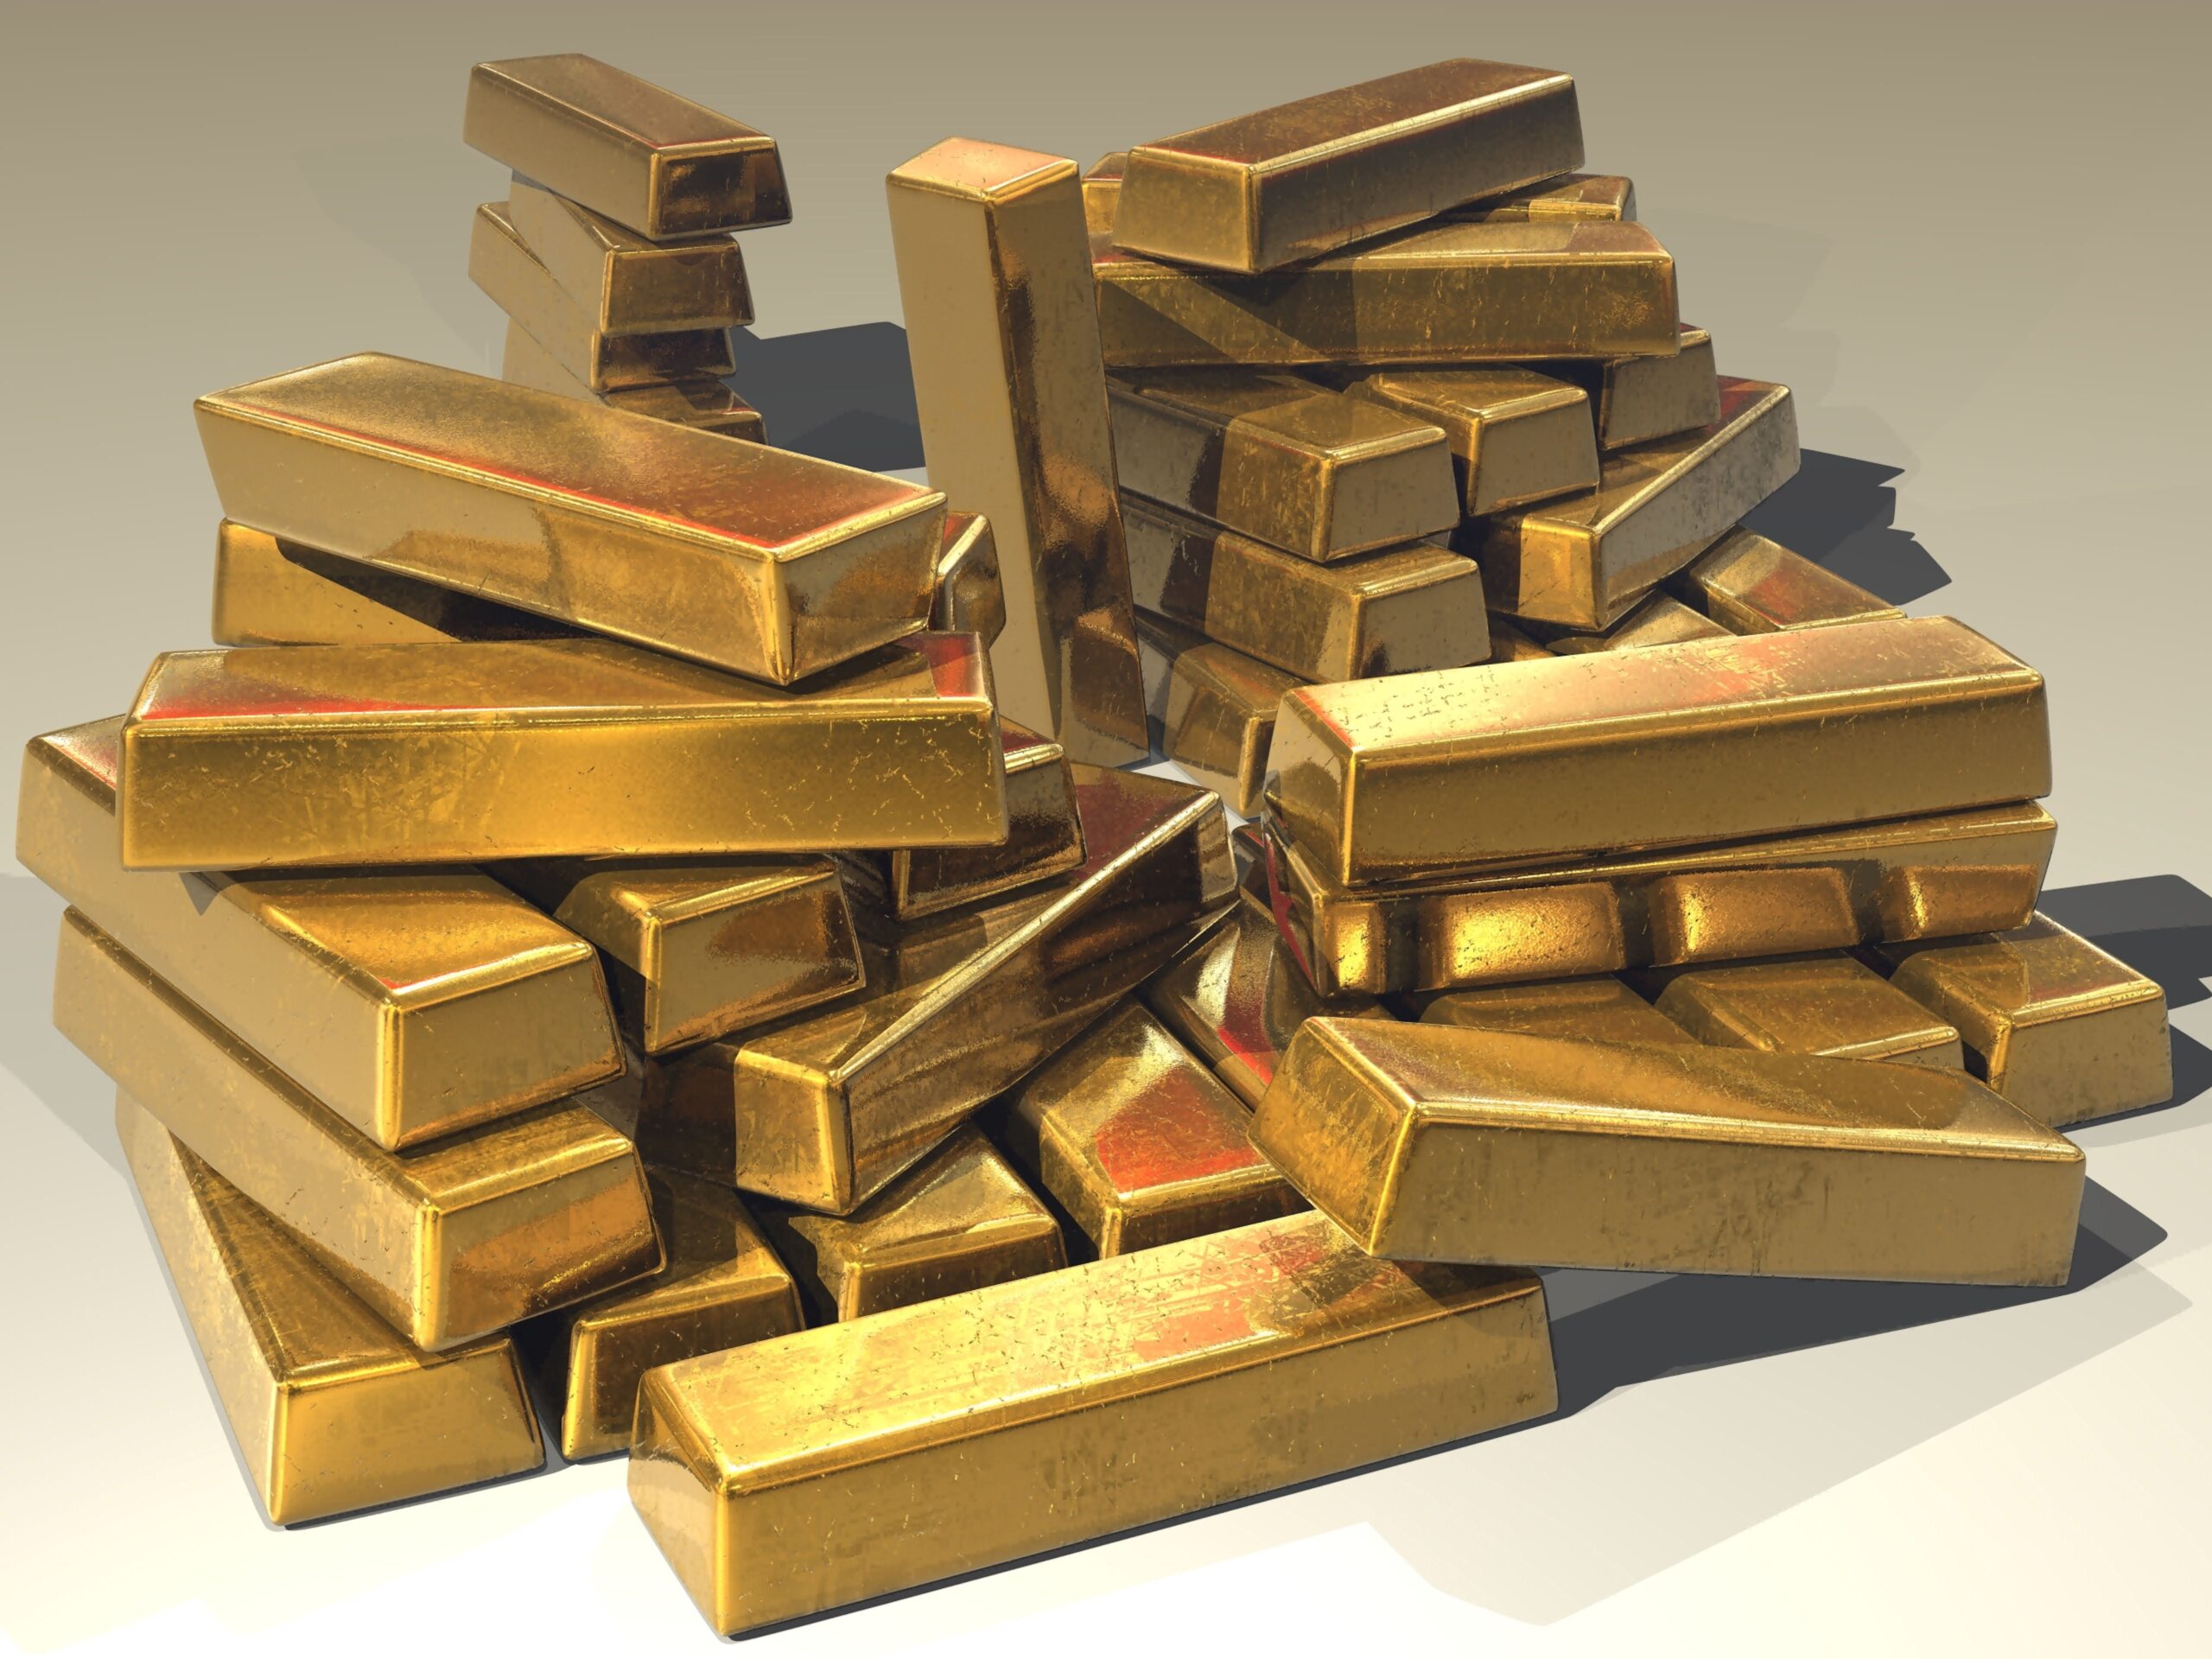 NAJVIŠE IKADA Srbija ima 38,3 tone zlatnih rezervi